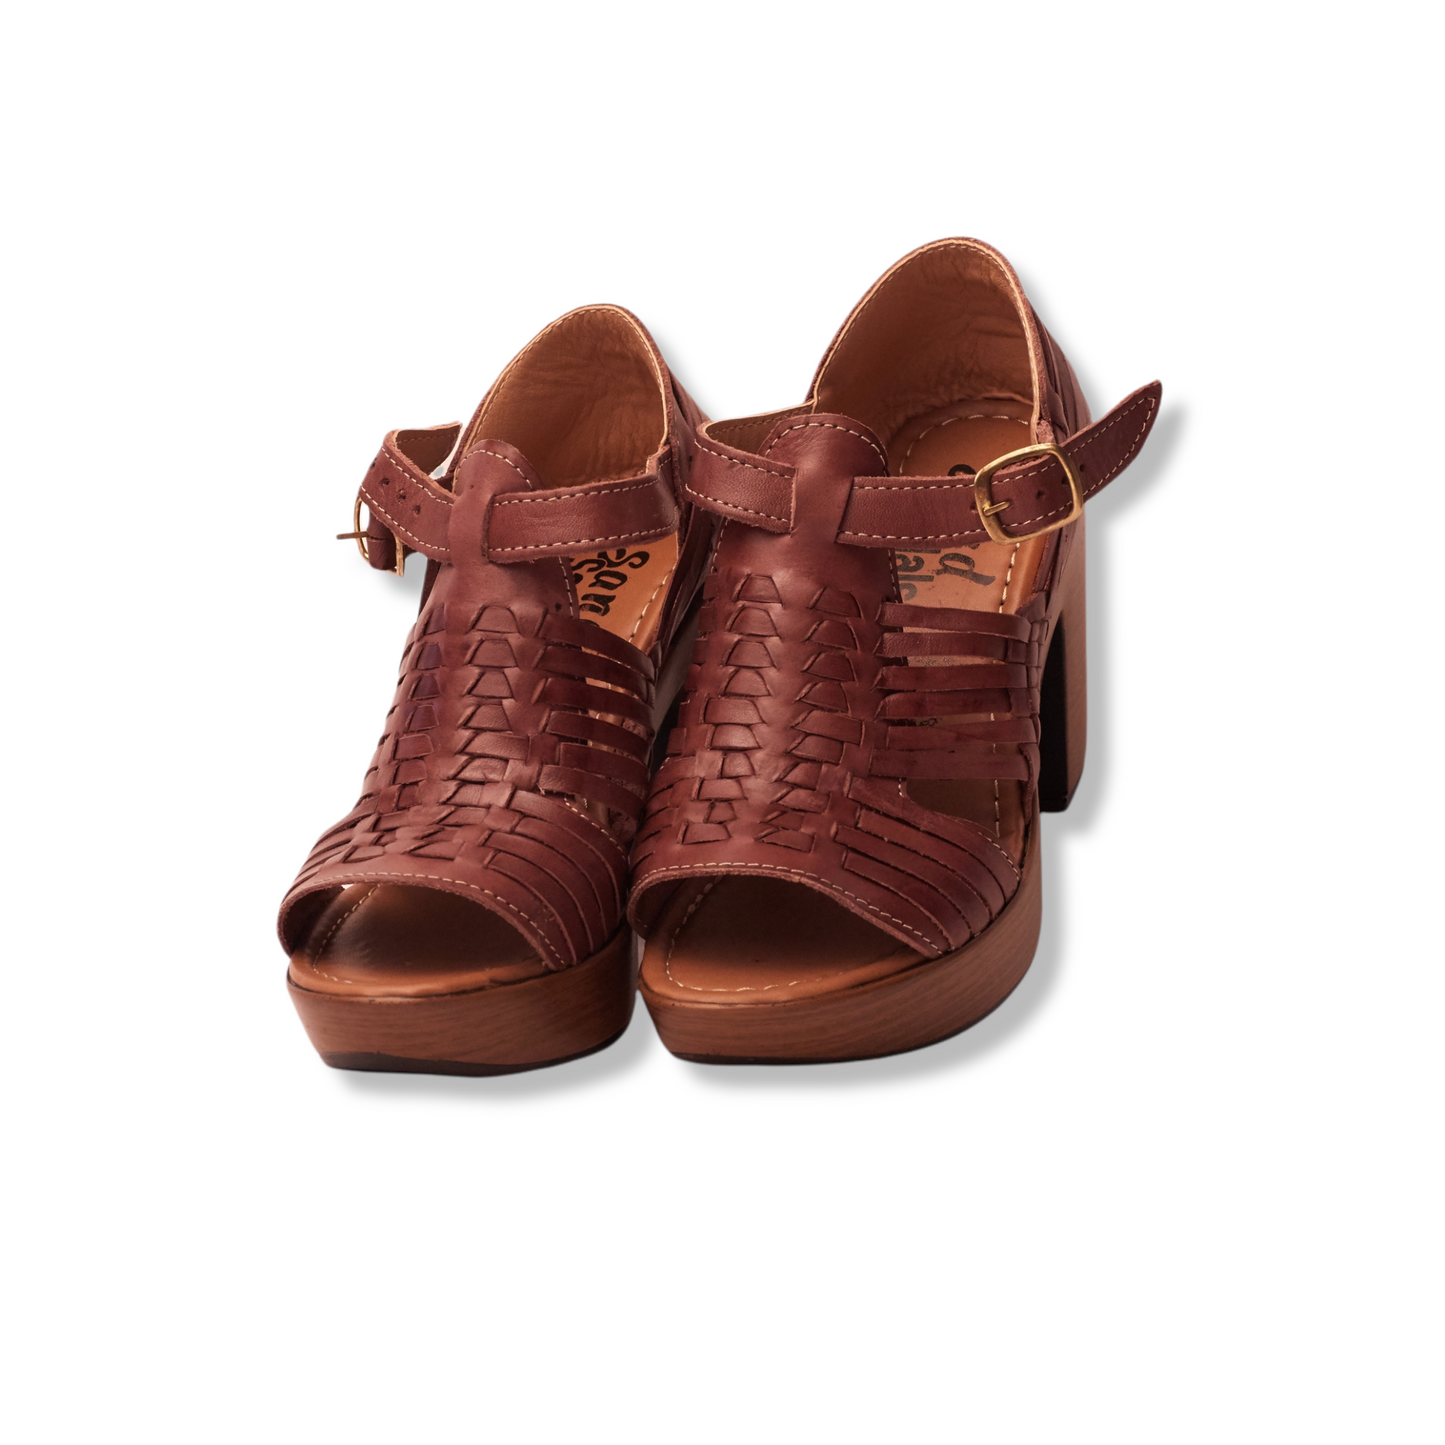 958/ Chunky Brown heel